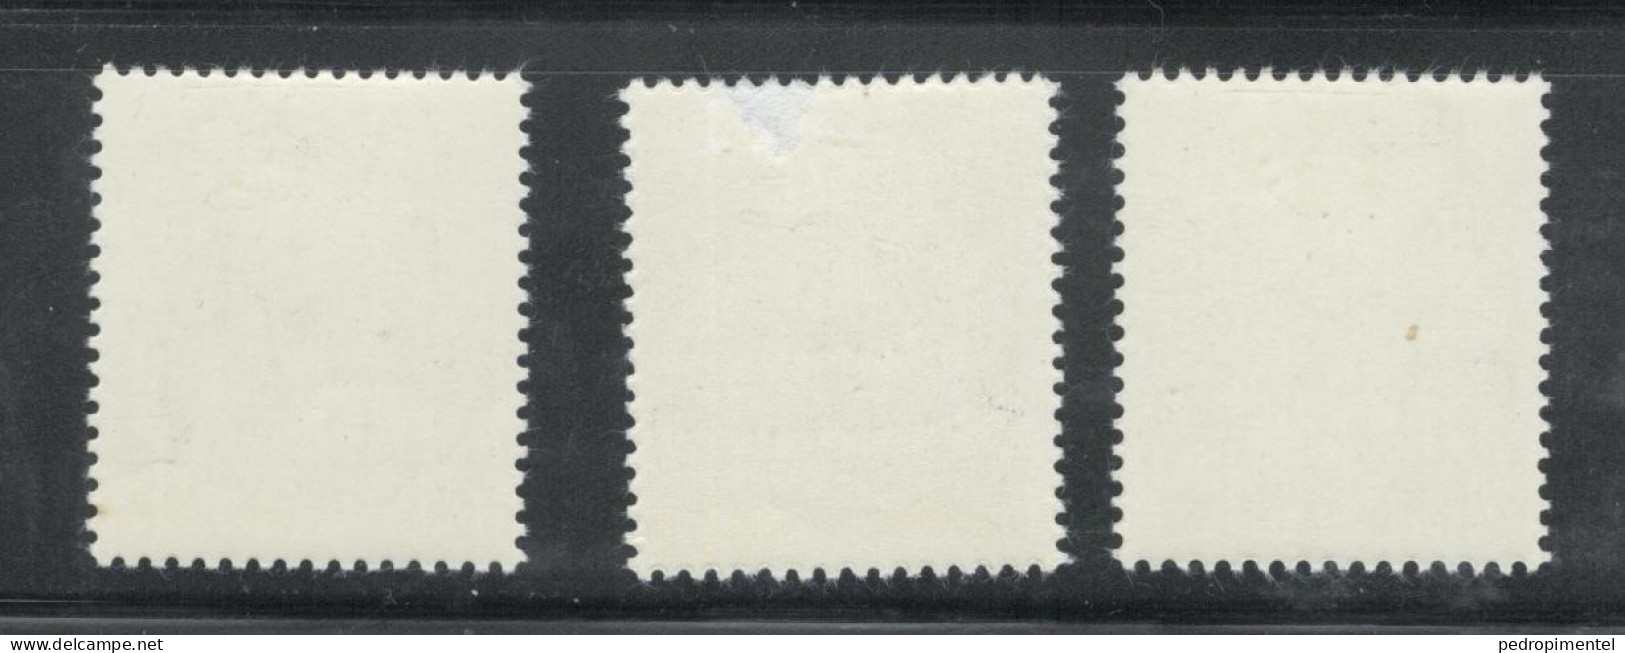 Portugal Stamps 1966 "Bocage" Condition MH OG #994-996 - Ongebruikt